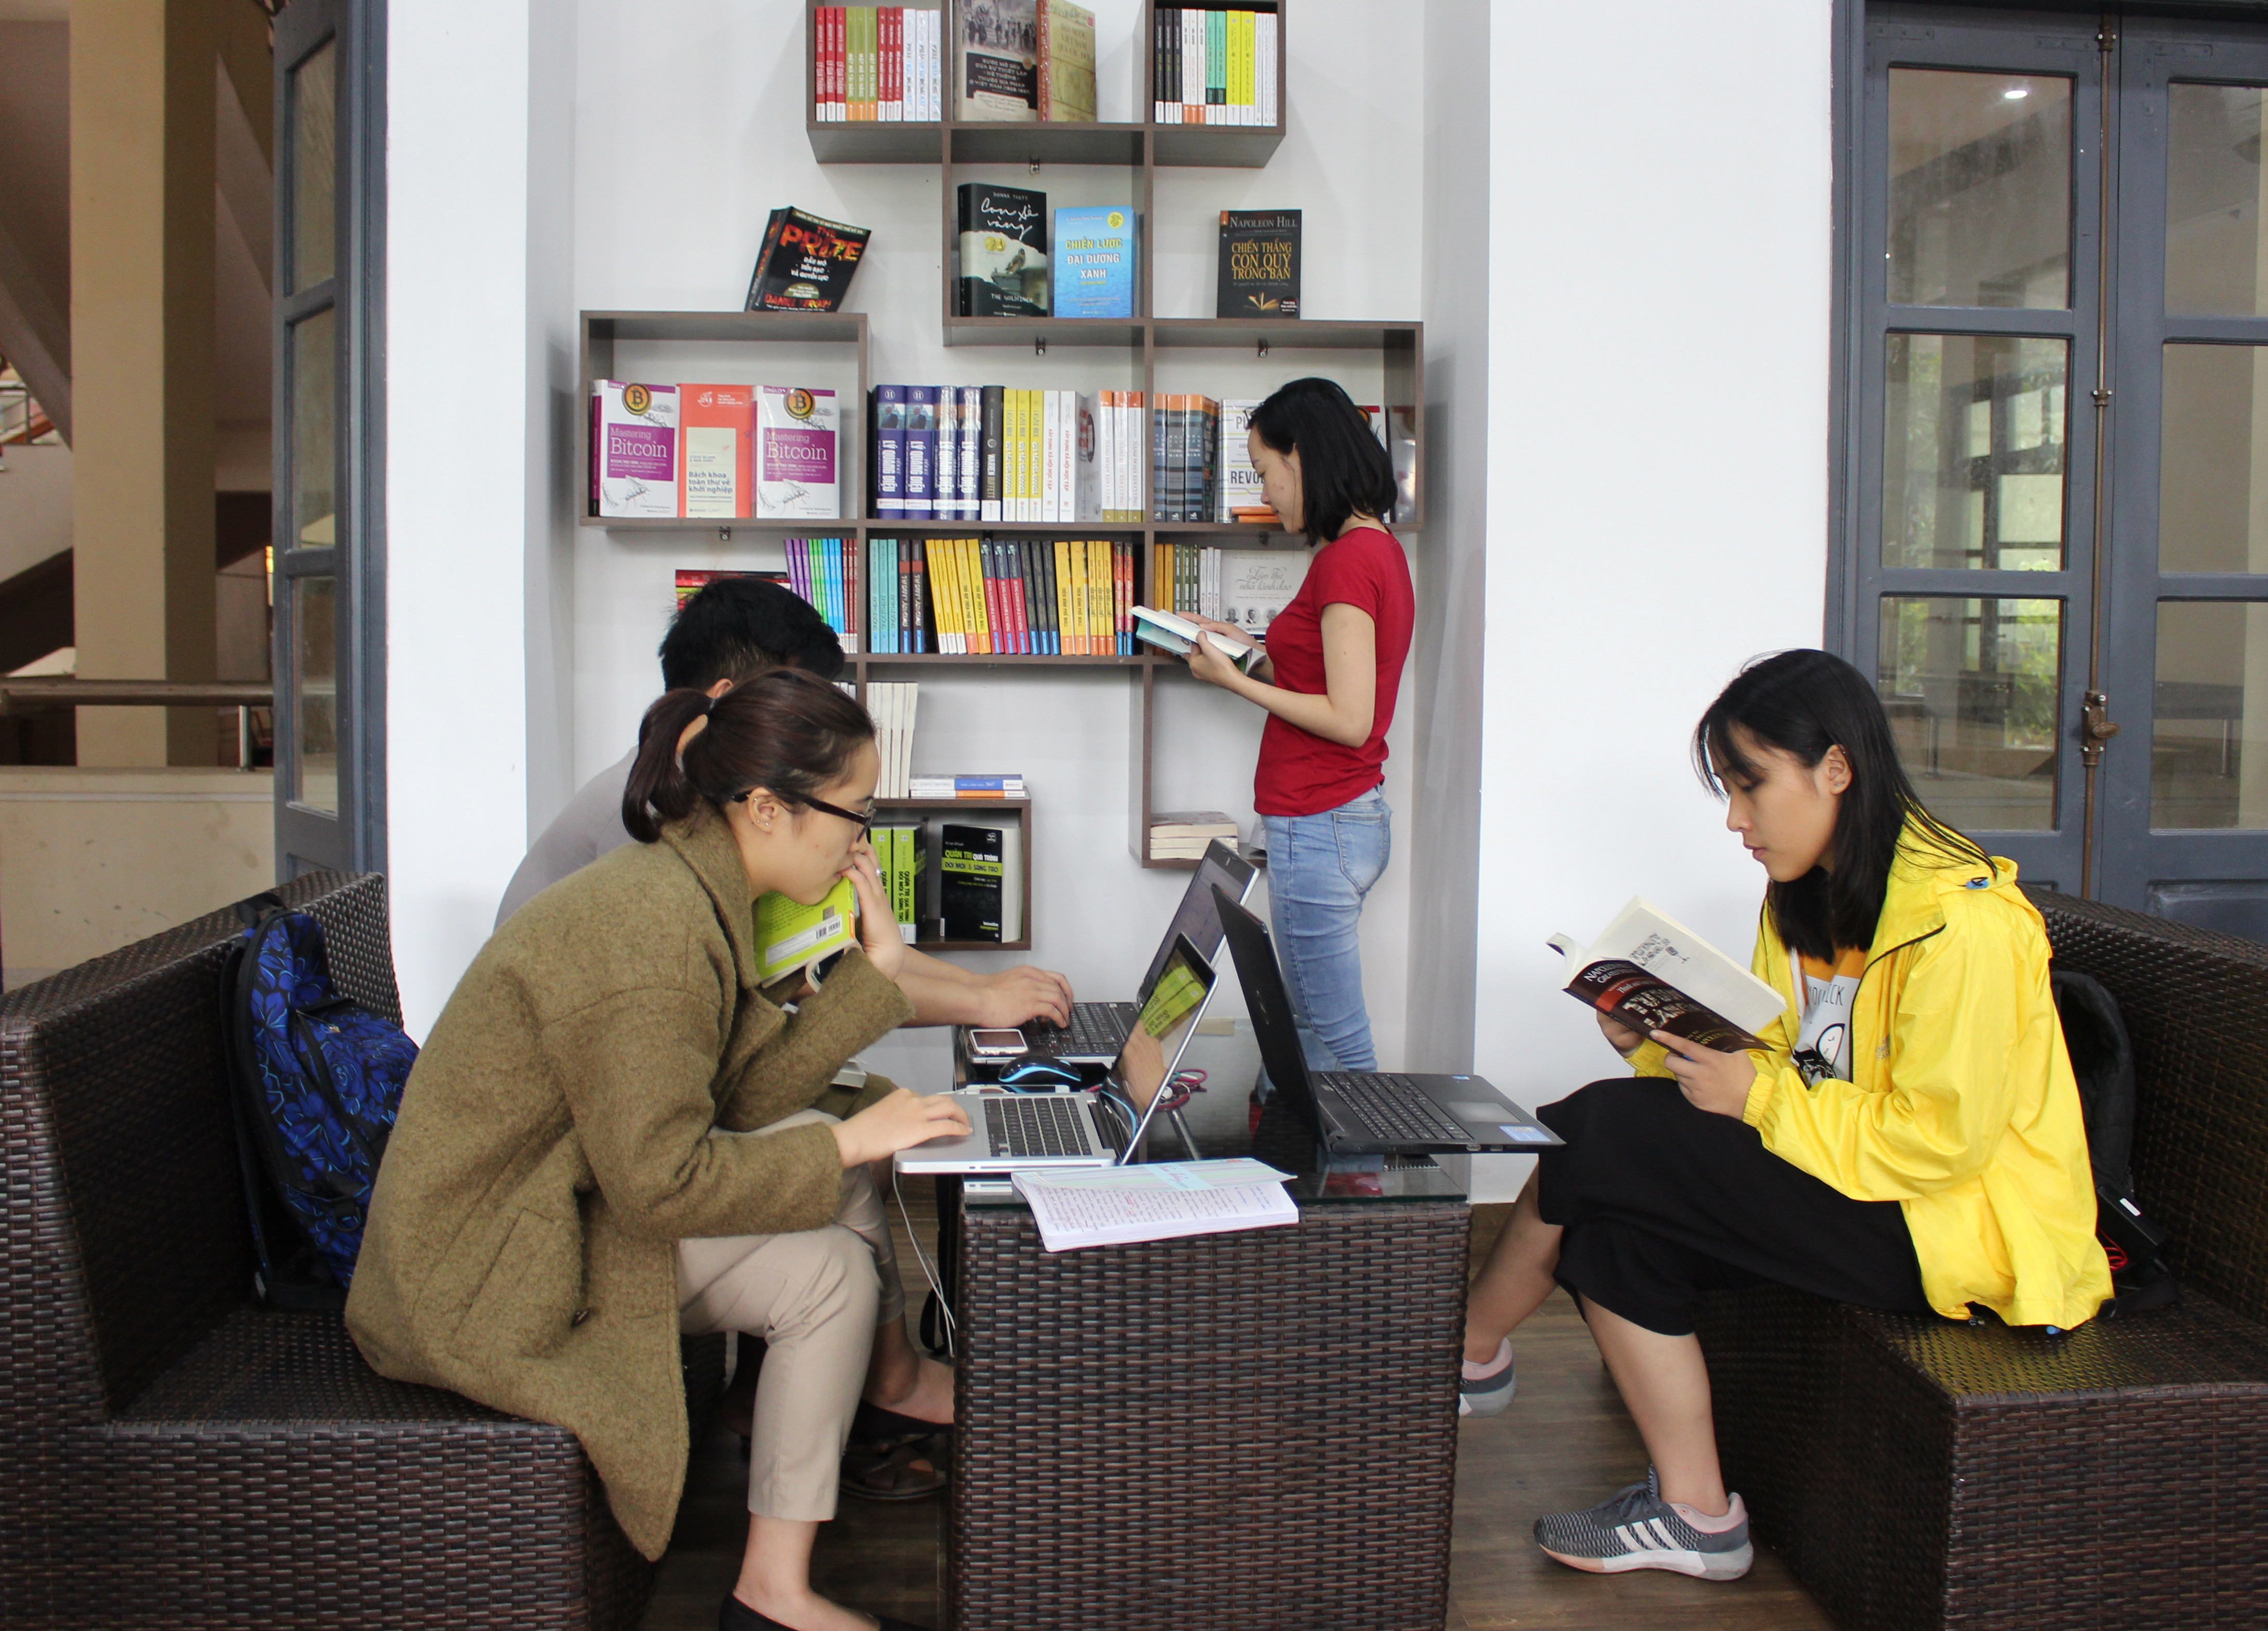 Phòng đọc sách doanh nhân và hướng nghiệp tuổi trẻ tạo không gian sinh hoạt văn hóa, kết nối cộng đồng yêu sách, ảnh Đinh Nguyệt 